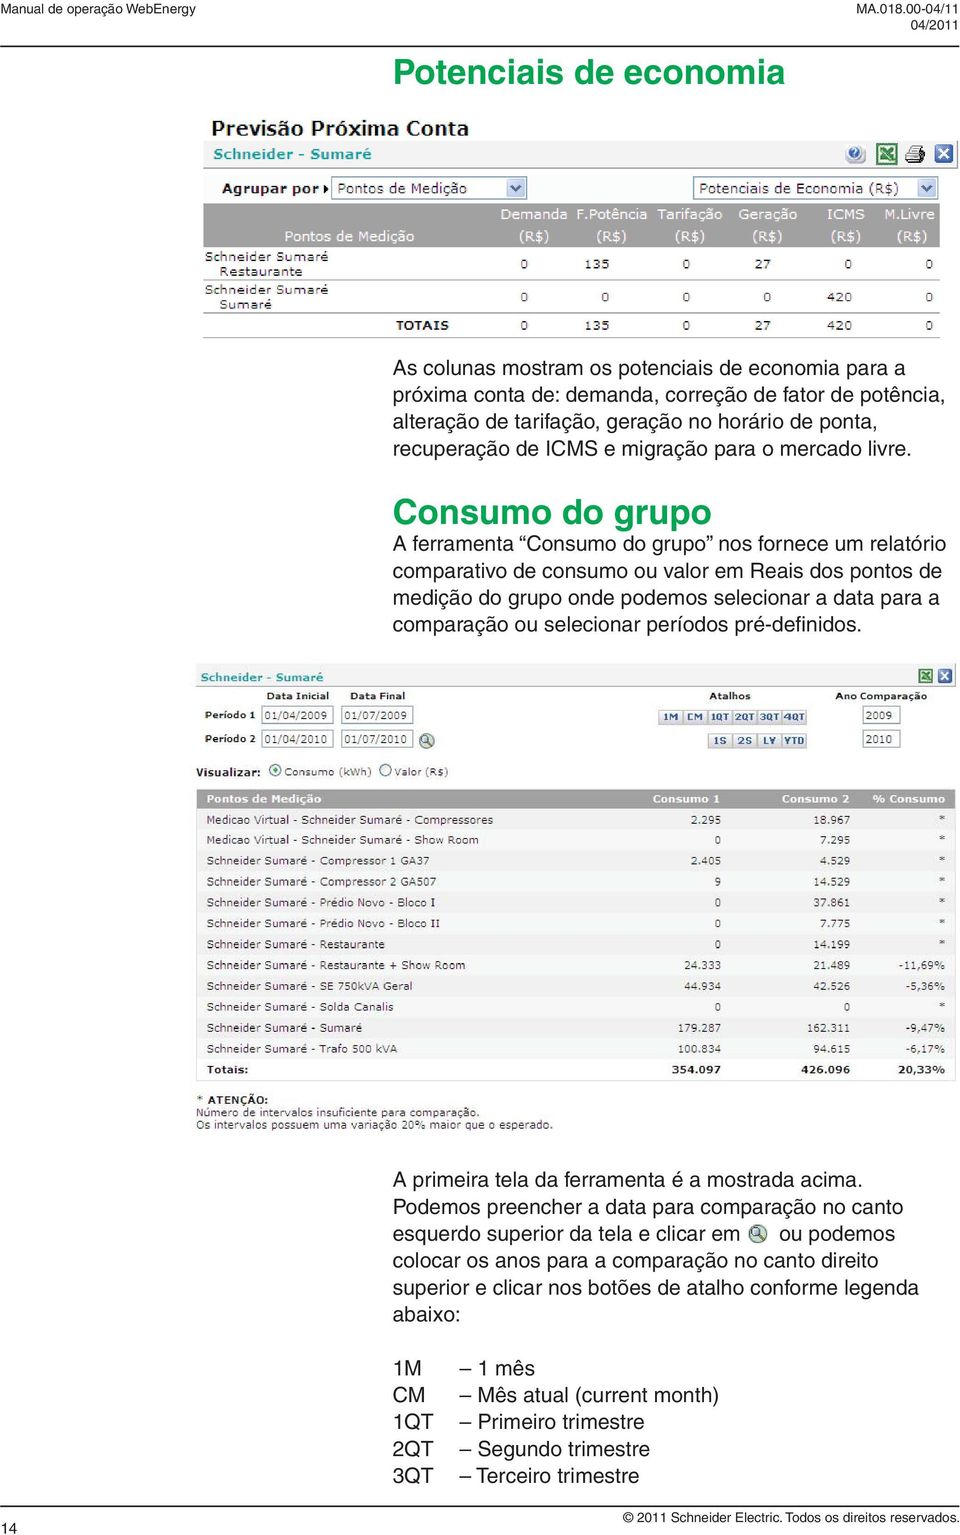 Consumo do grupo A ferramenta Consumo do grupo nos fornece um relatório comparativo de consumo ou valor em Reais dos pontos de medição do grupo onde podemos selecionar a data para a comparação ou